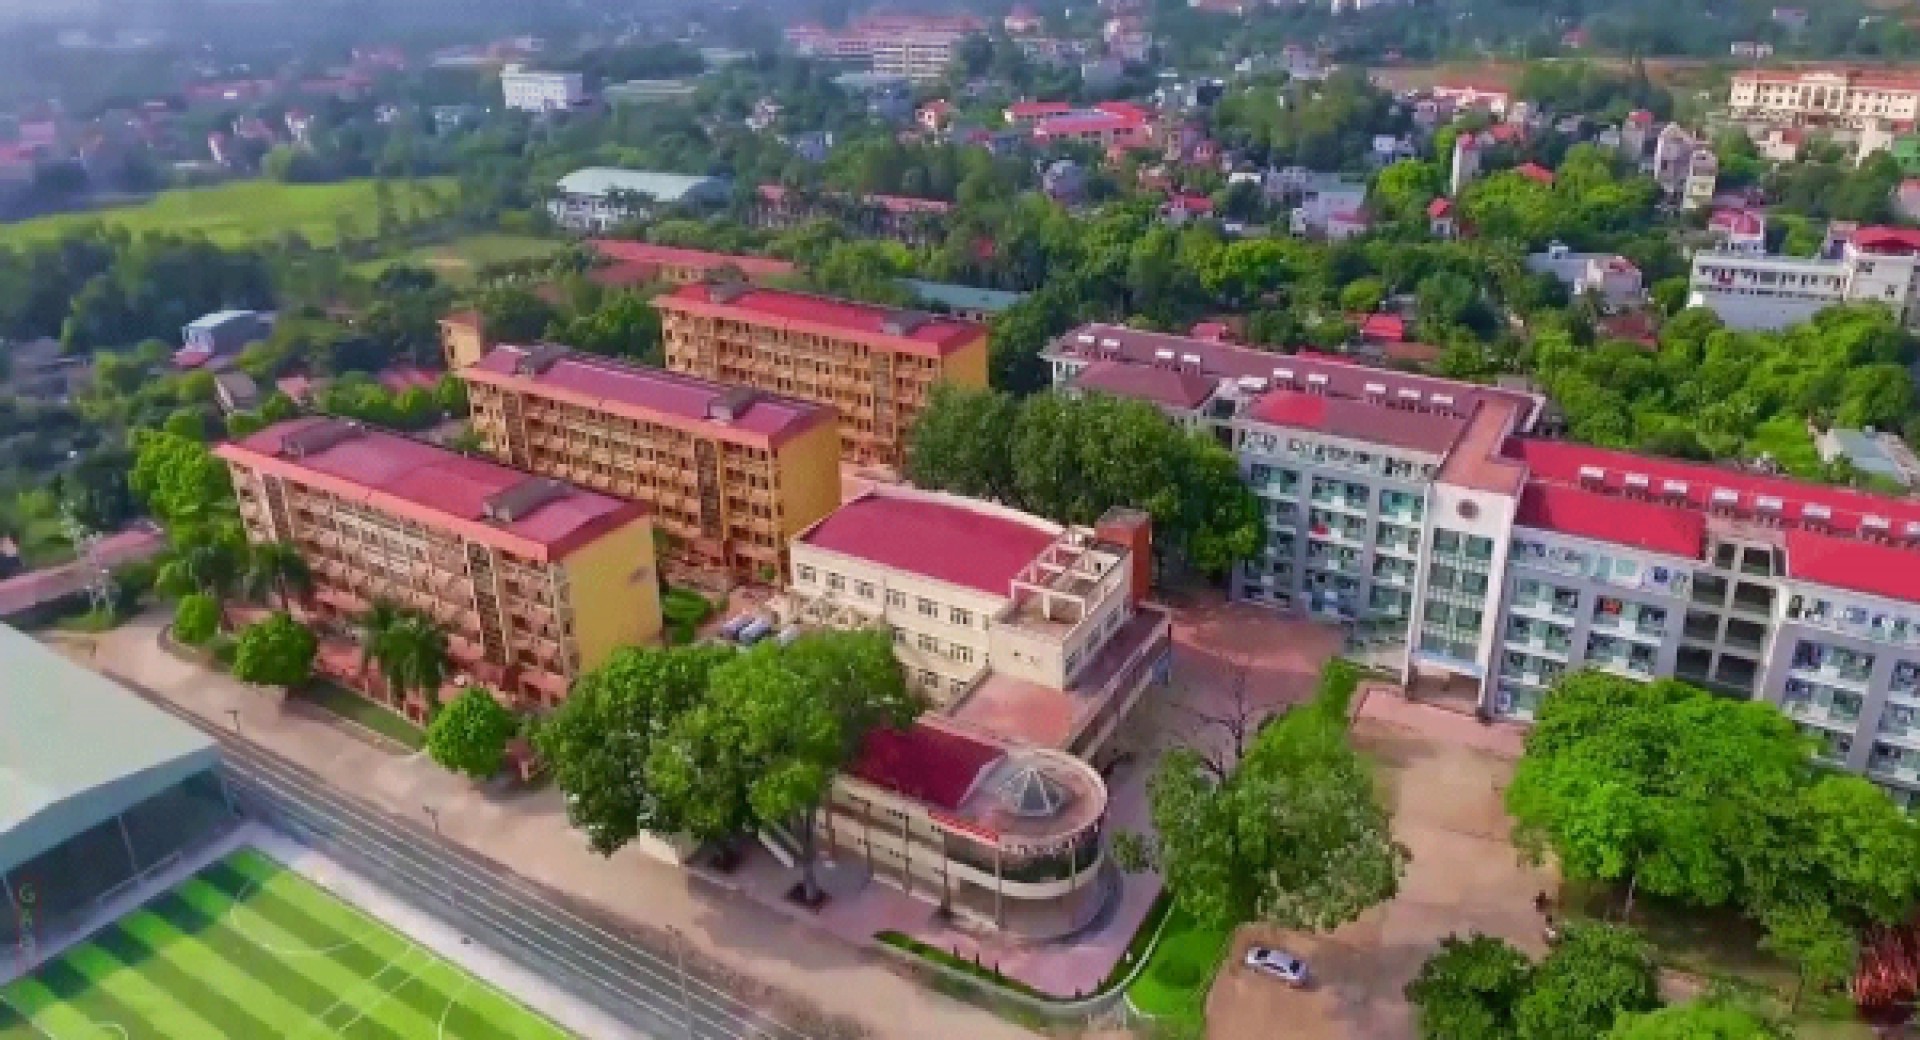 Đại học Sư phạm Hà Nội 2 chính thức thông báo tuyển sinh 2019